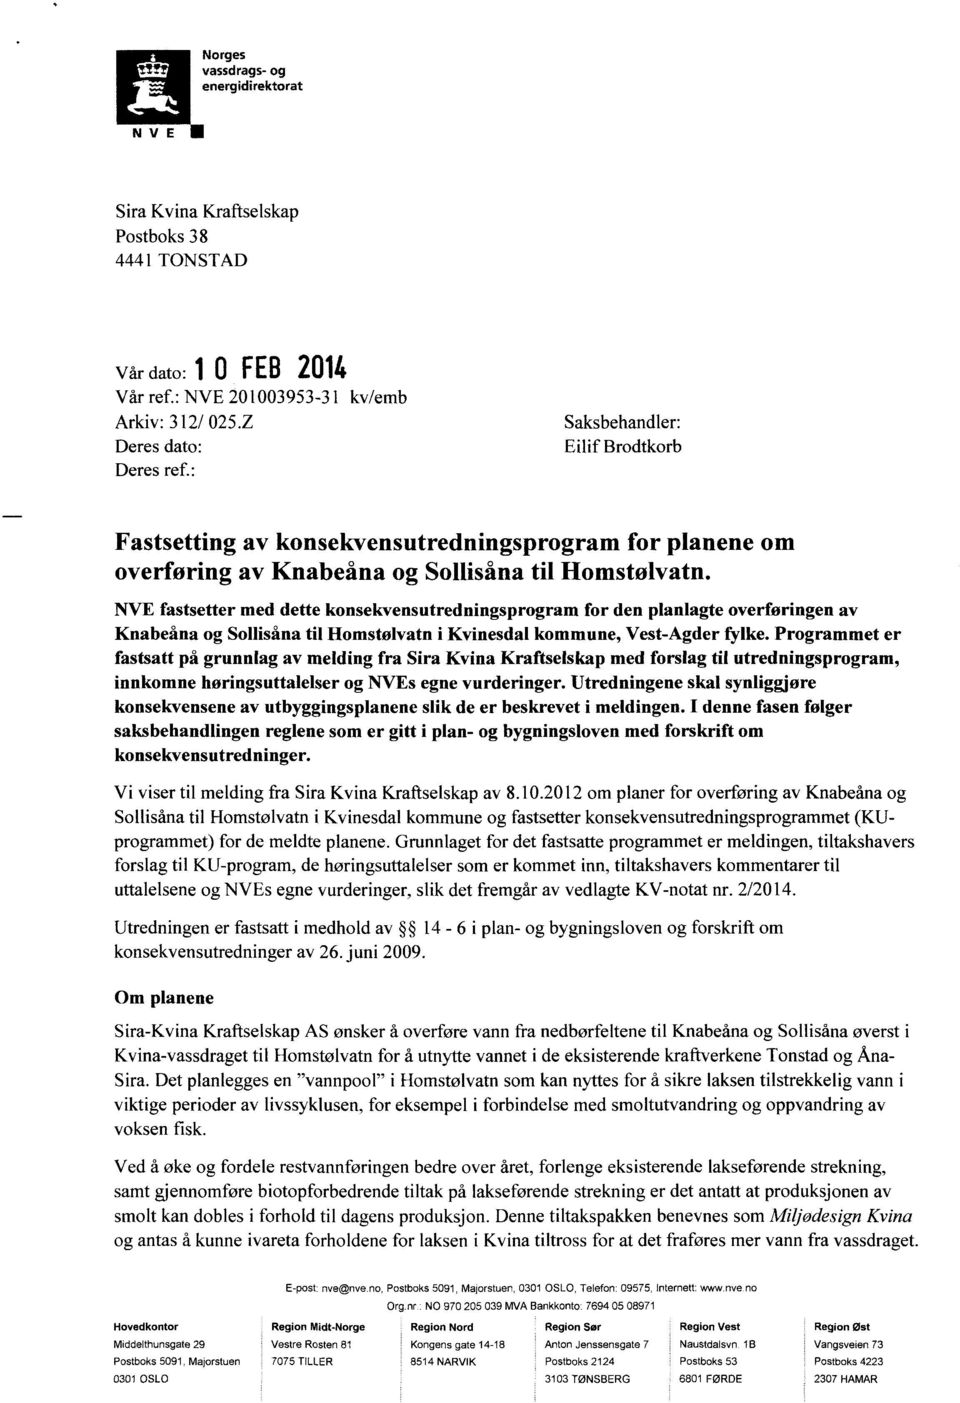 NVE fastsetter med dette konsekvensutredningsprogram for den planlagte overføringen av Knabeåna og Sollisåna til Homstølvatn i Kvinesdal kommune, Vest-Agder fylke.